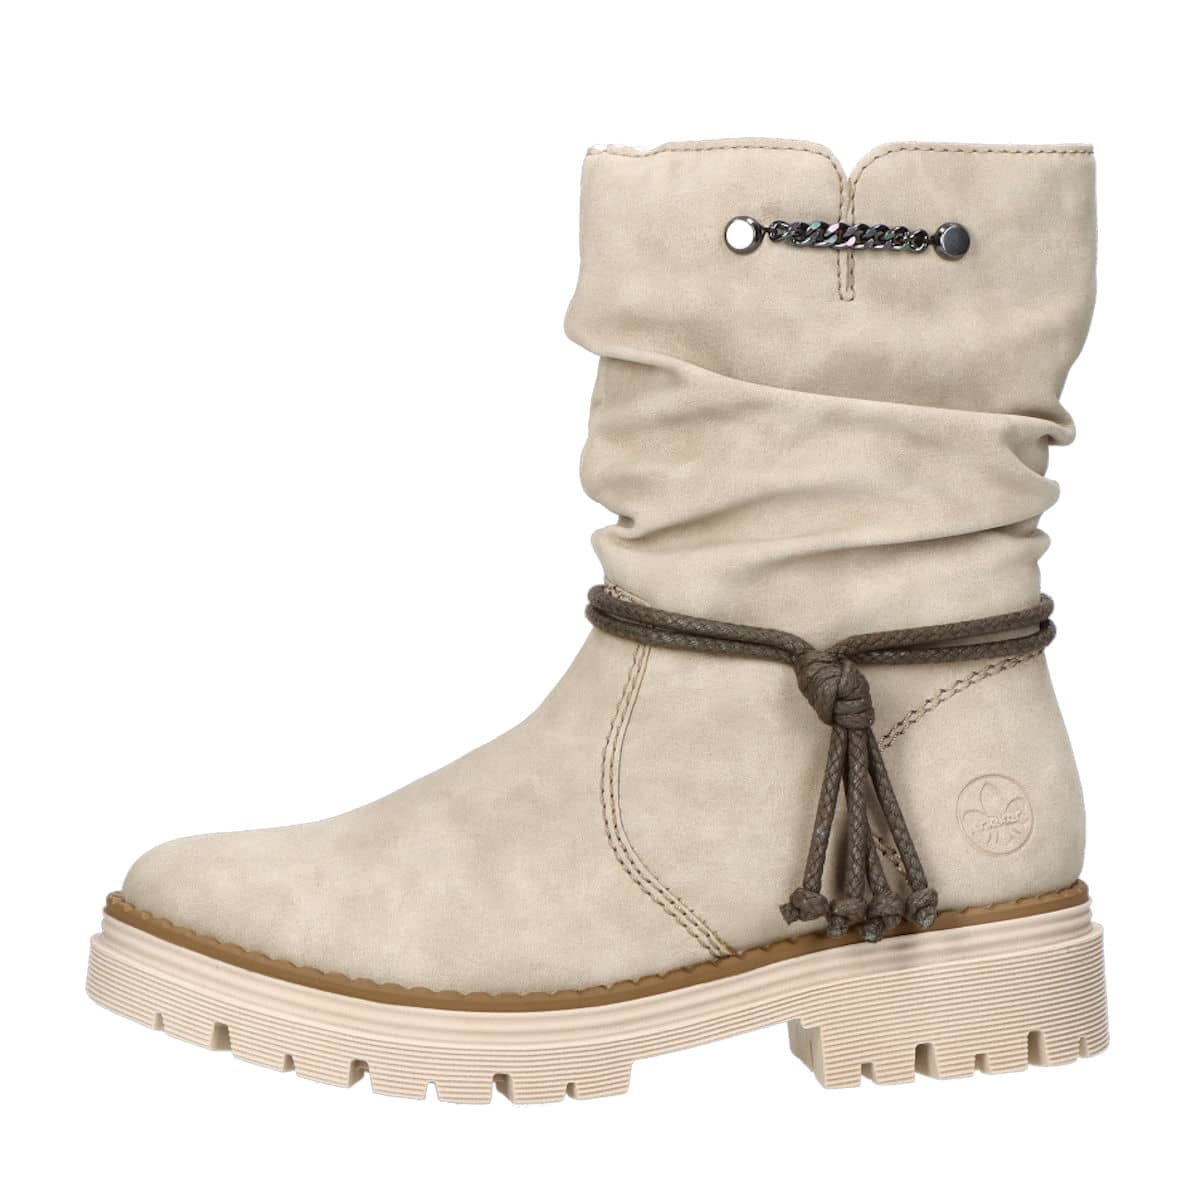 vorst Wind Verhandeling Rieker women's stylish boots with zipper - beige | Robel.shoes